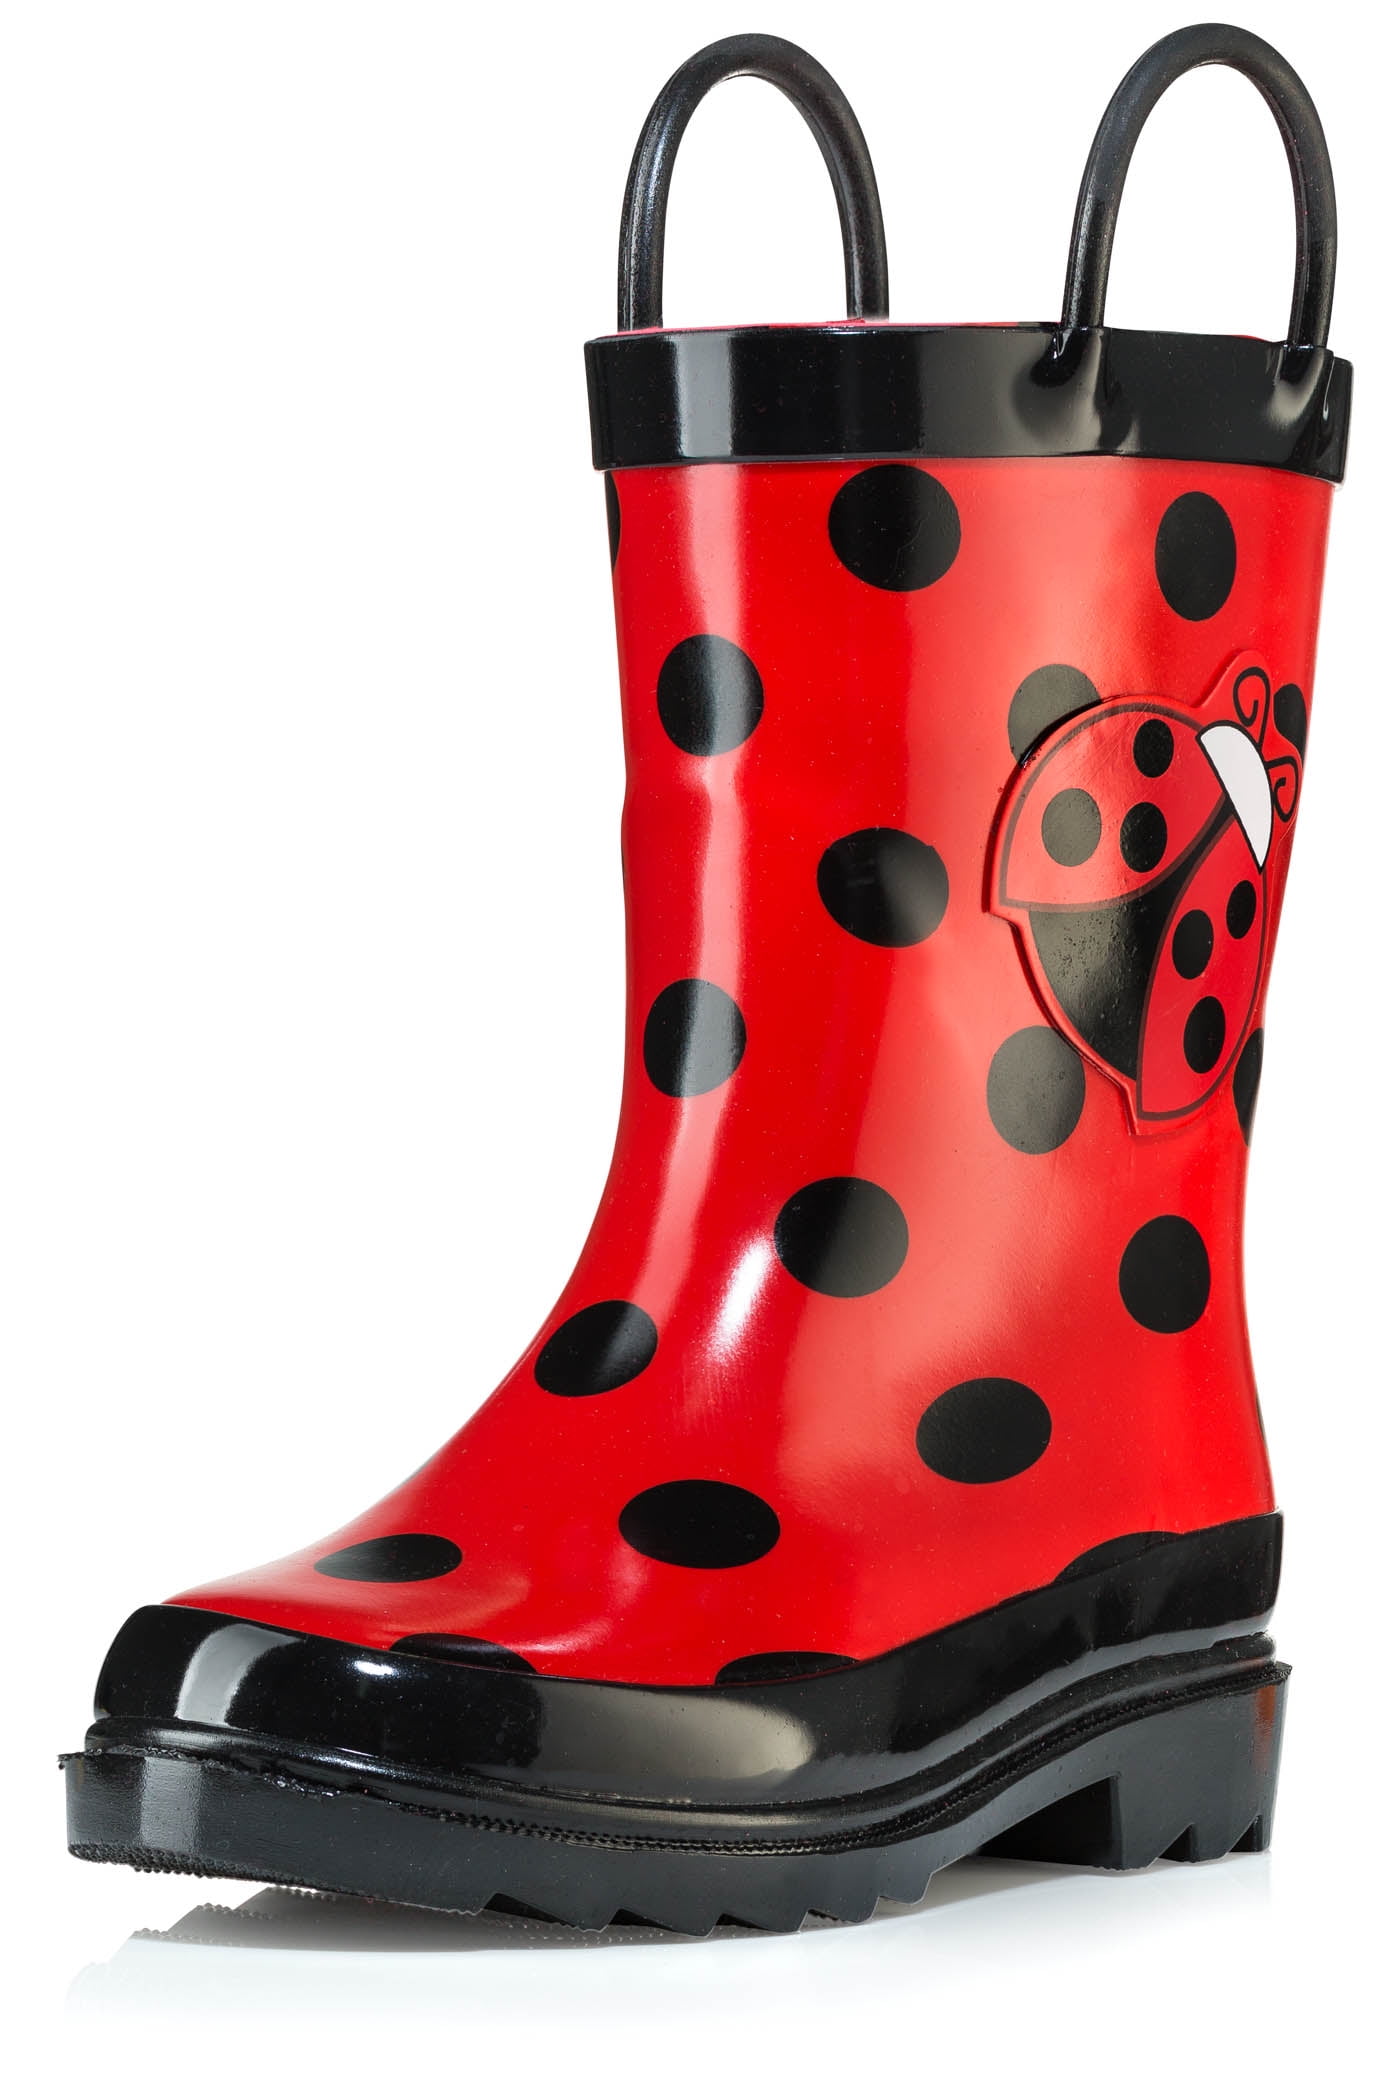 OAKI Kids Waterproof Rain Boots with Easy-On Handles Fiery Red 